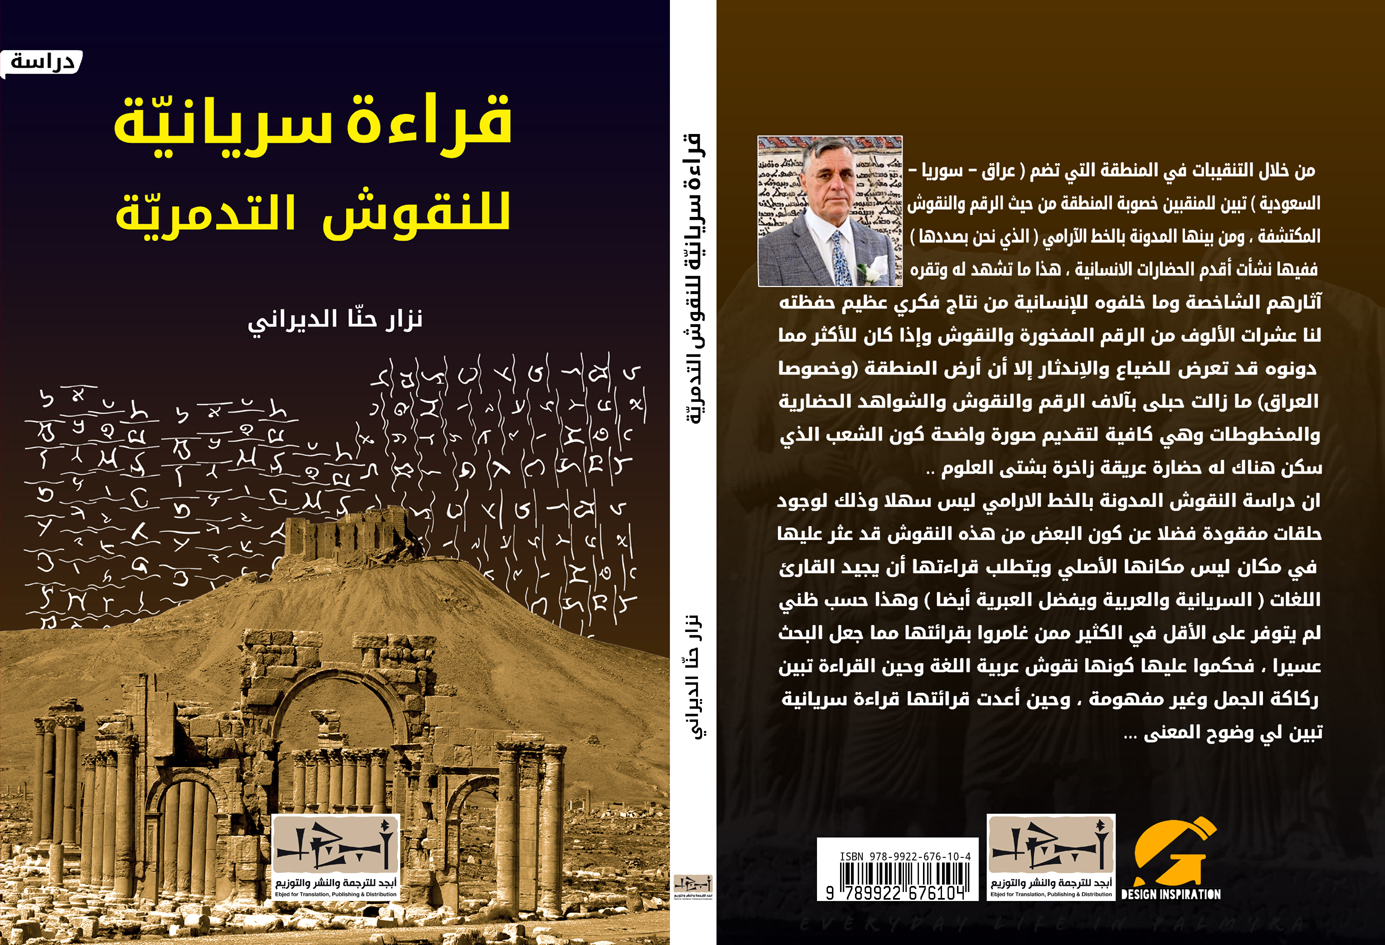 اسم الكتاب: قراءة جديدة لنقوش تدمر - تأليف: نزار حنا الديراني